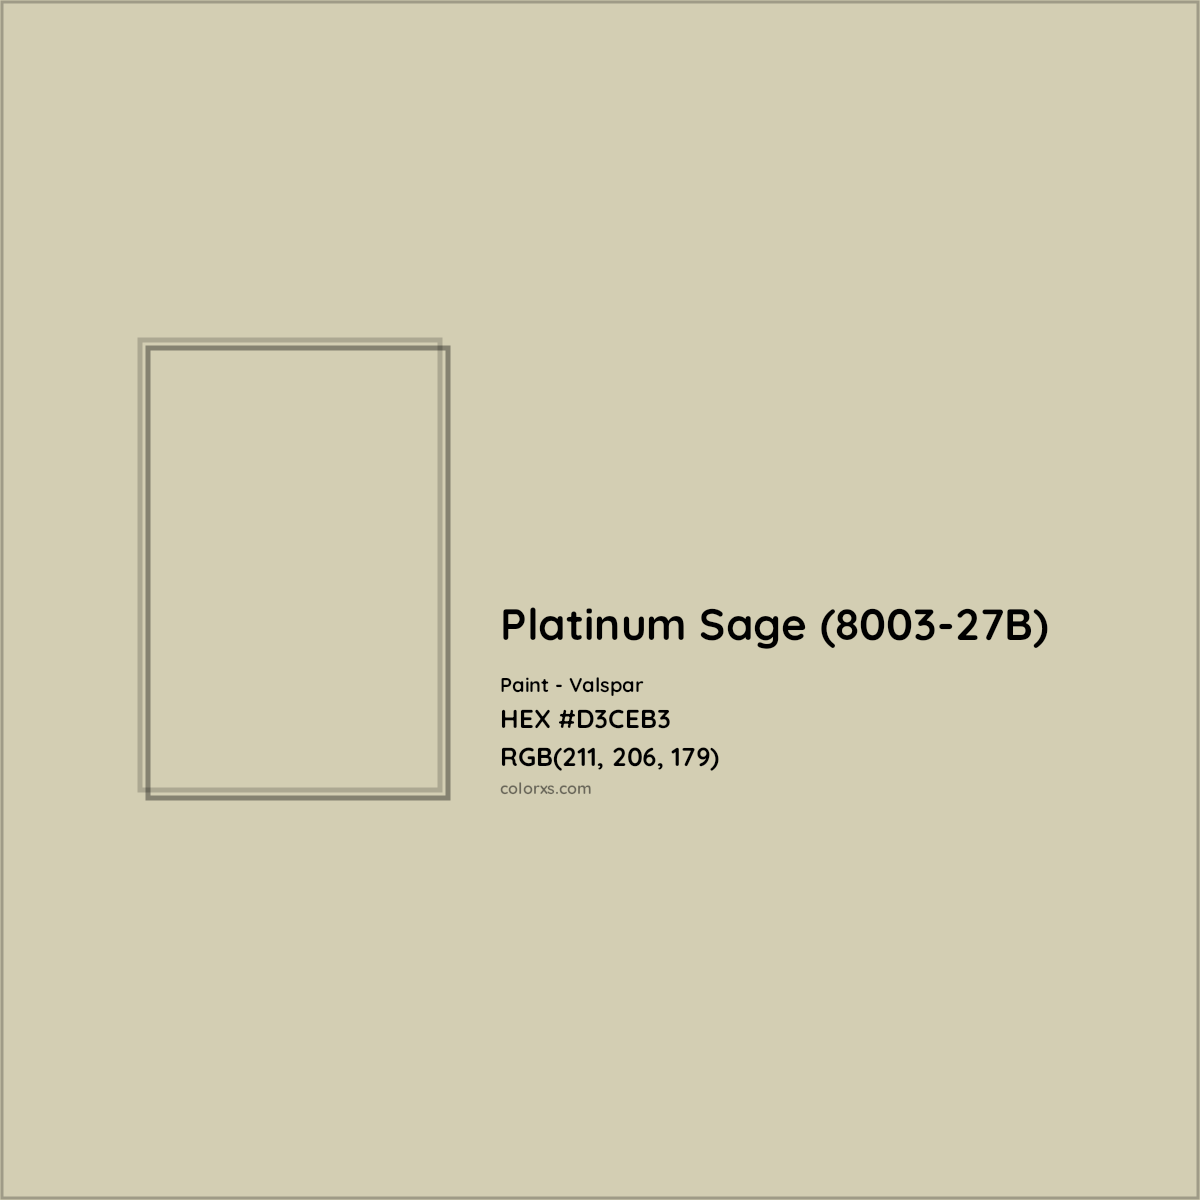 HEX #D3CEB3 Platinum Sage (8003-27B) Paint Valspar - Color Code